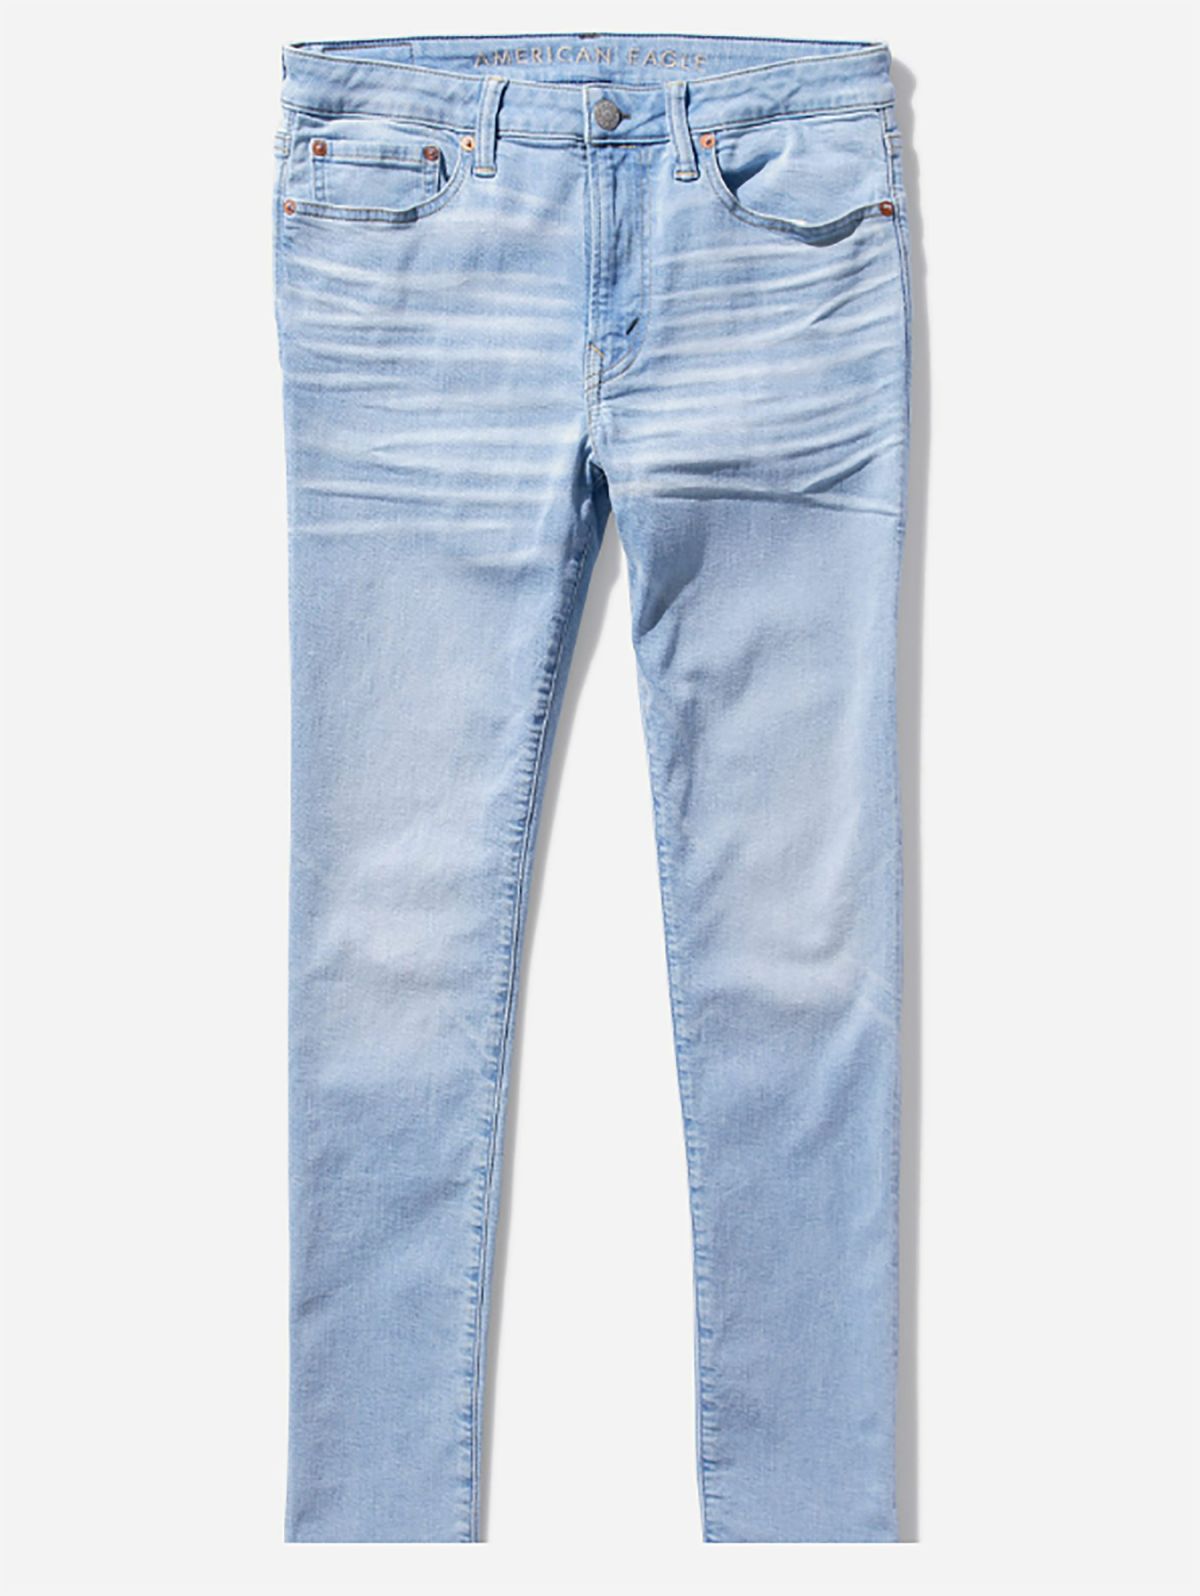  ג'ינס בגזרת סקיני של AMERICAN EAGLE